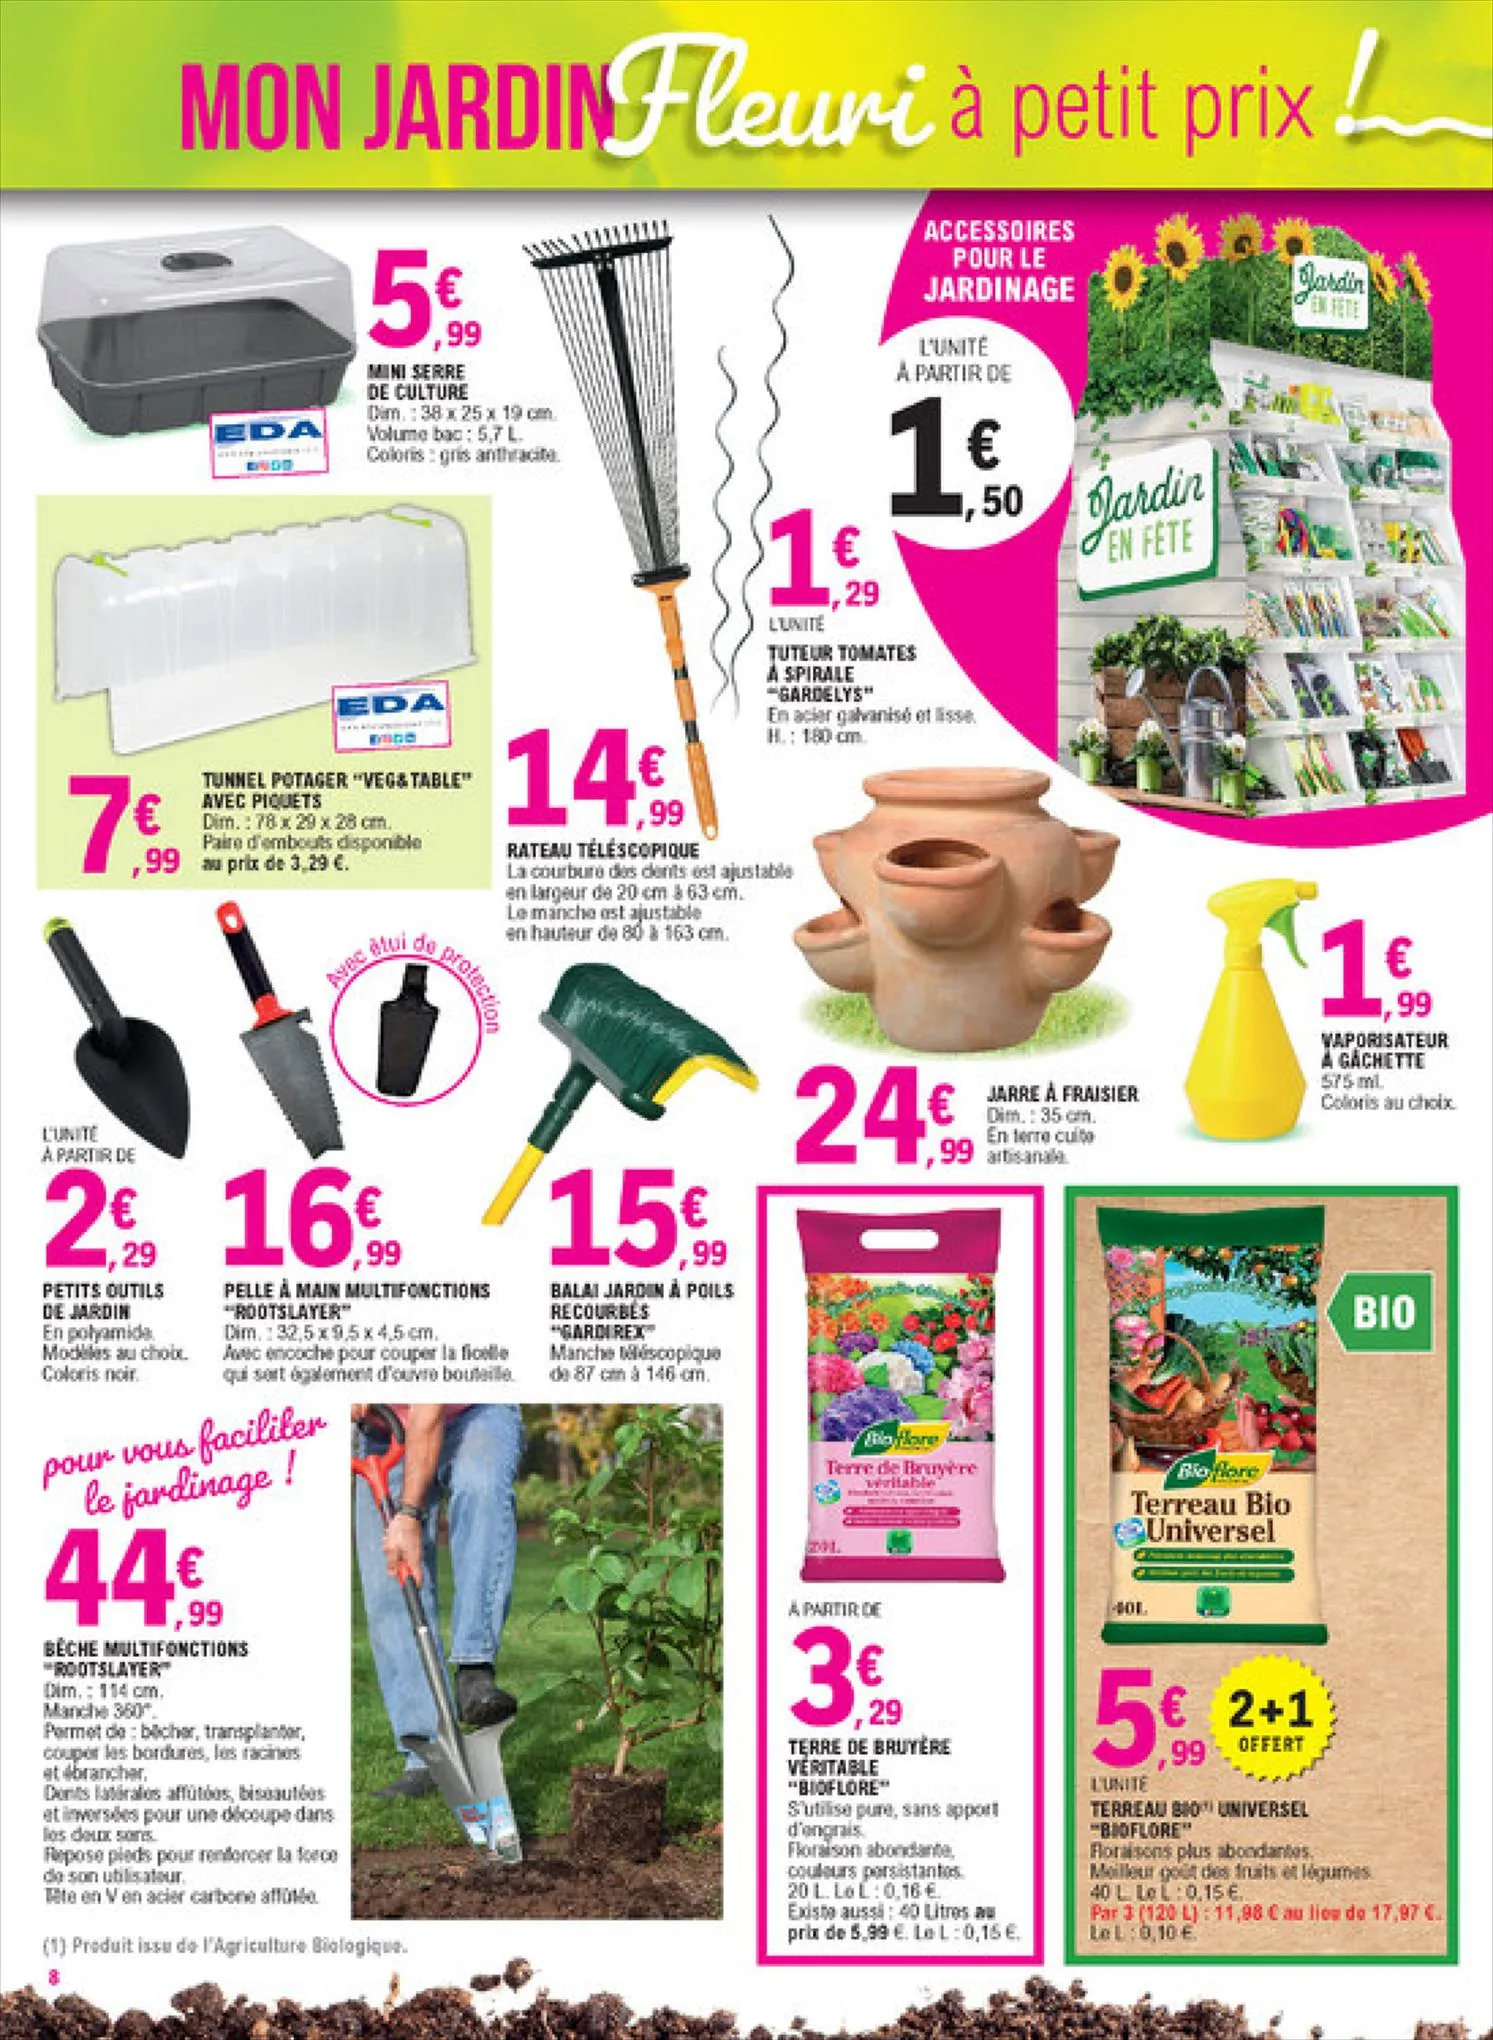 Catalogue Mon jardin fleuri à petit prix!, page 00008